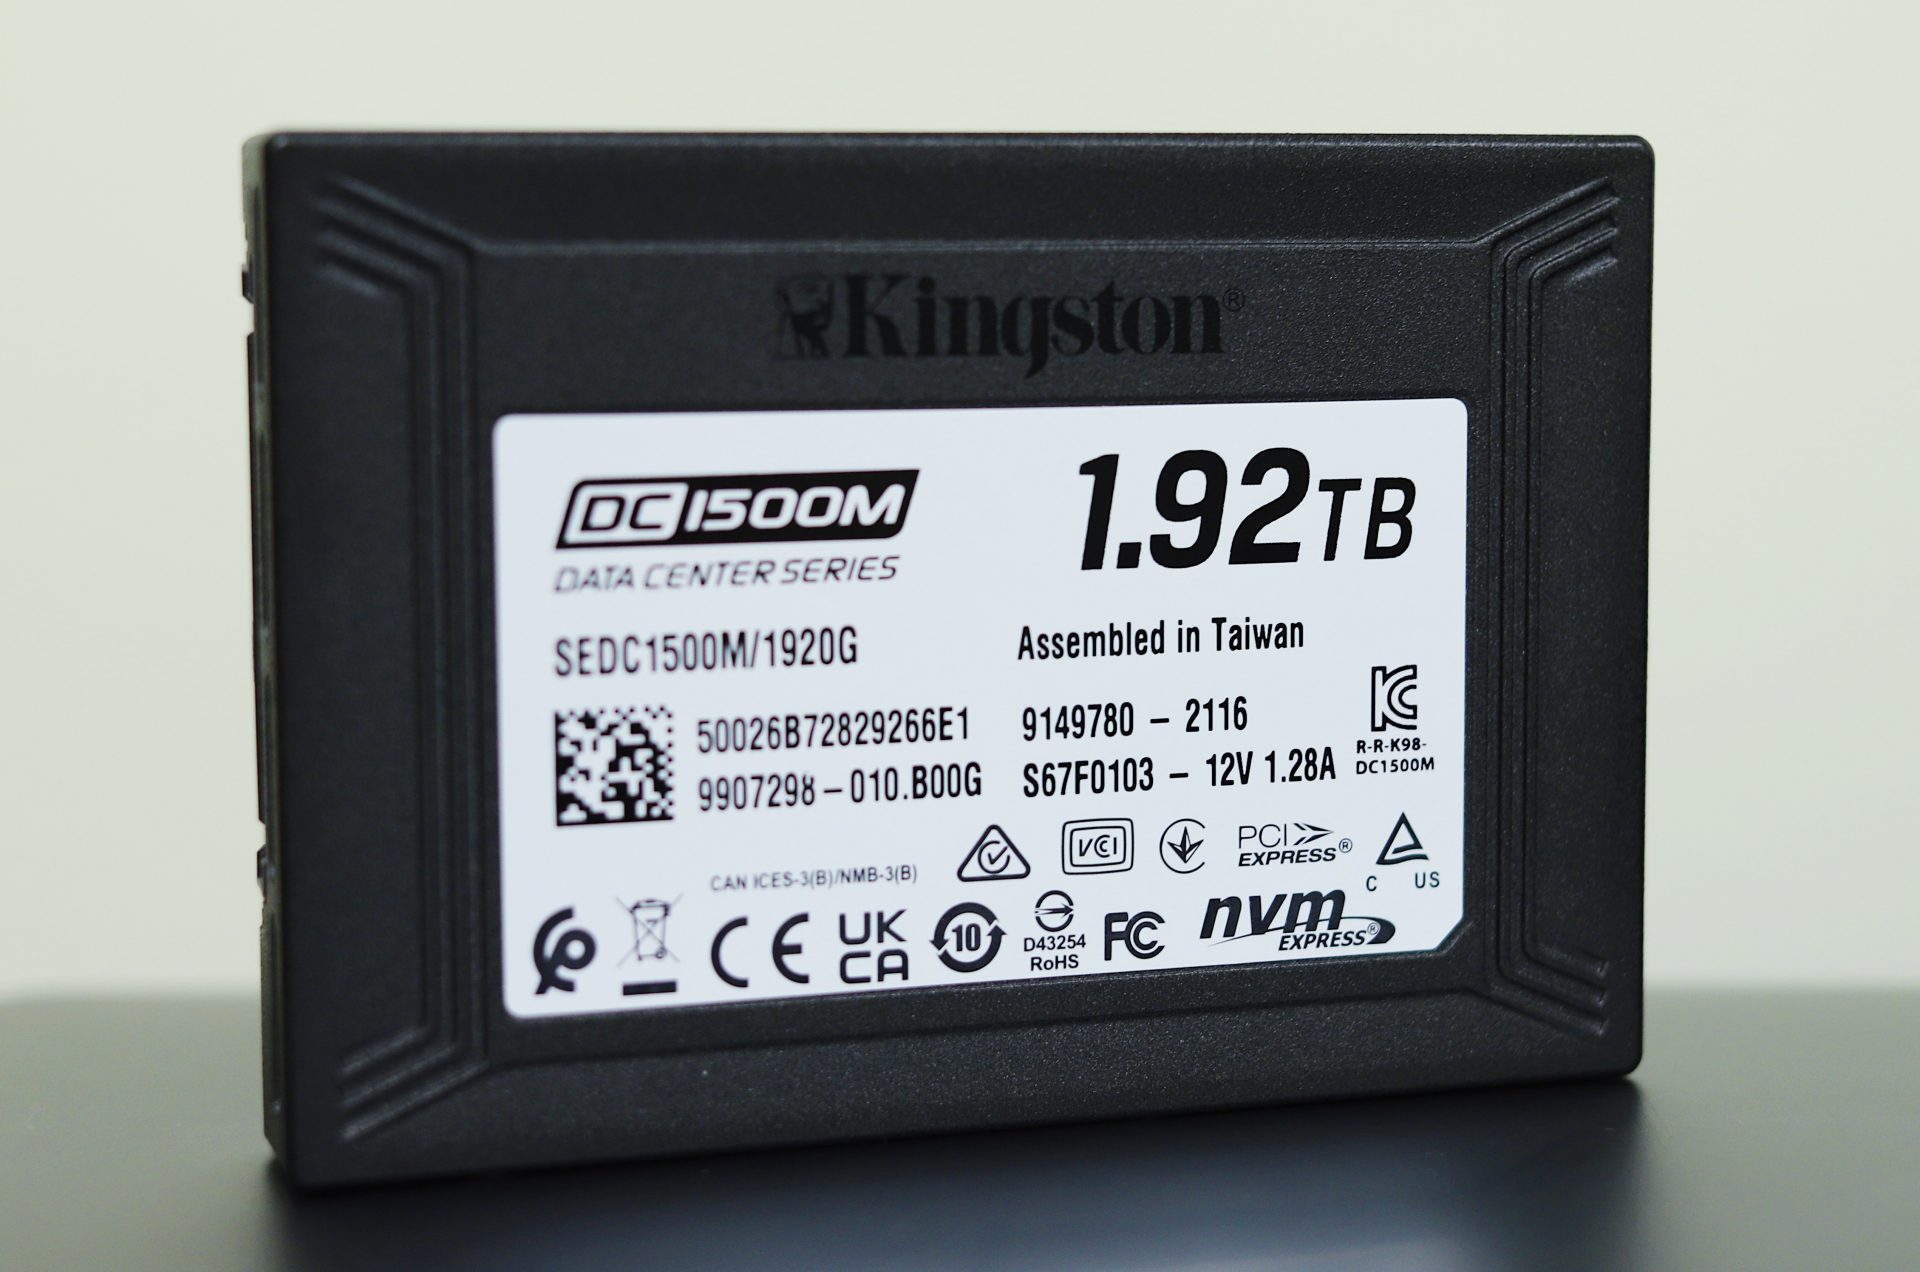 Kingston DC1500M U.2 NVMe SSD Review 